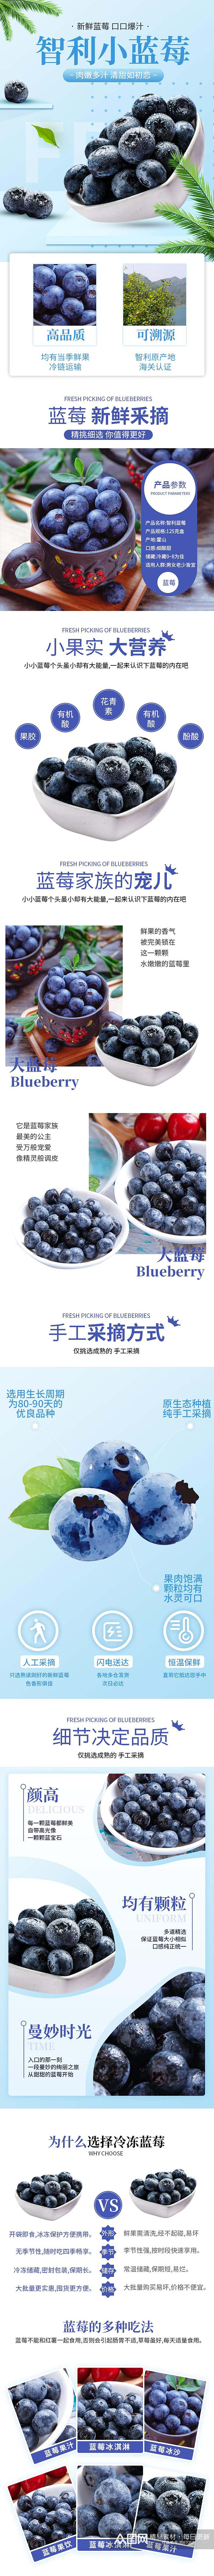 智利蓝莓水果手机版详情页素材